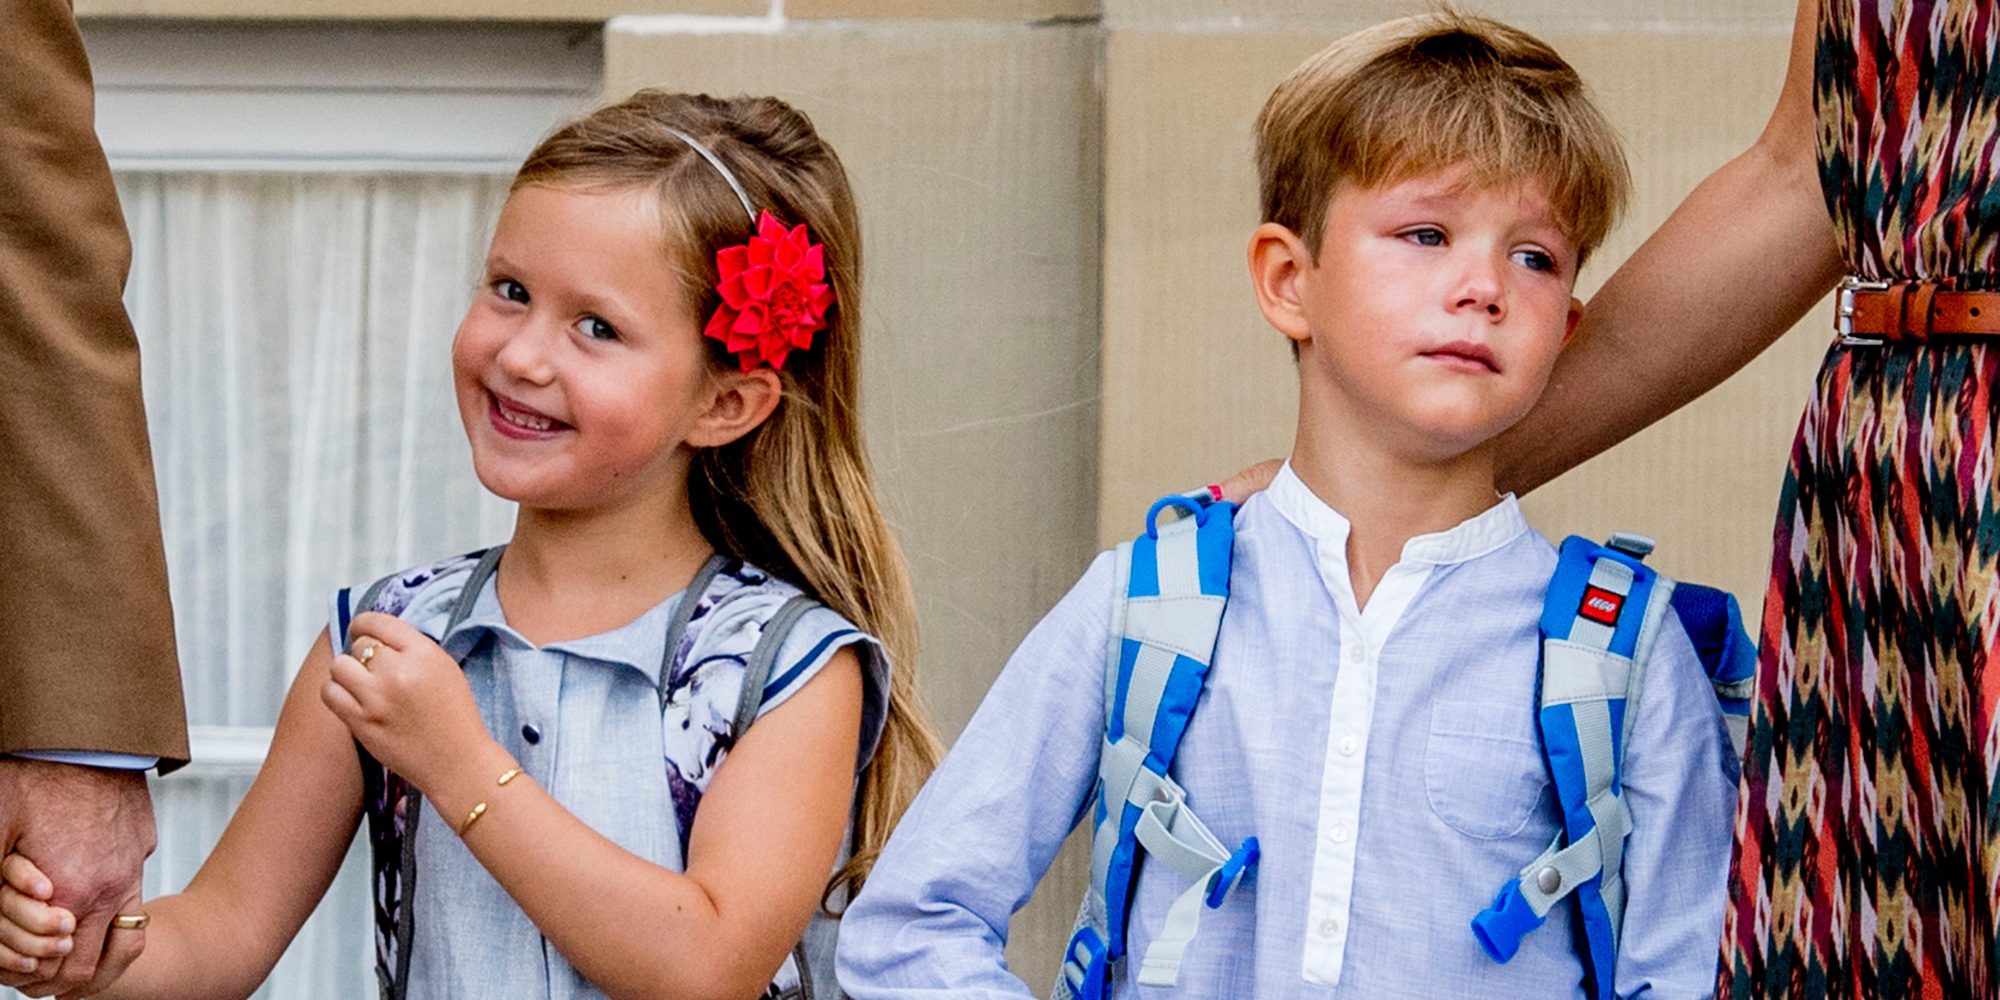 Vicente y Josefina de Dinamarca en su primer día de colegio: de las lágrimas de él a la alegría de ella